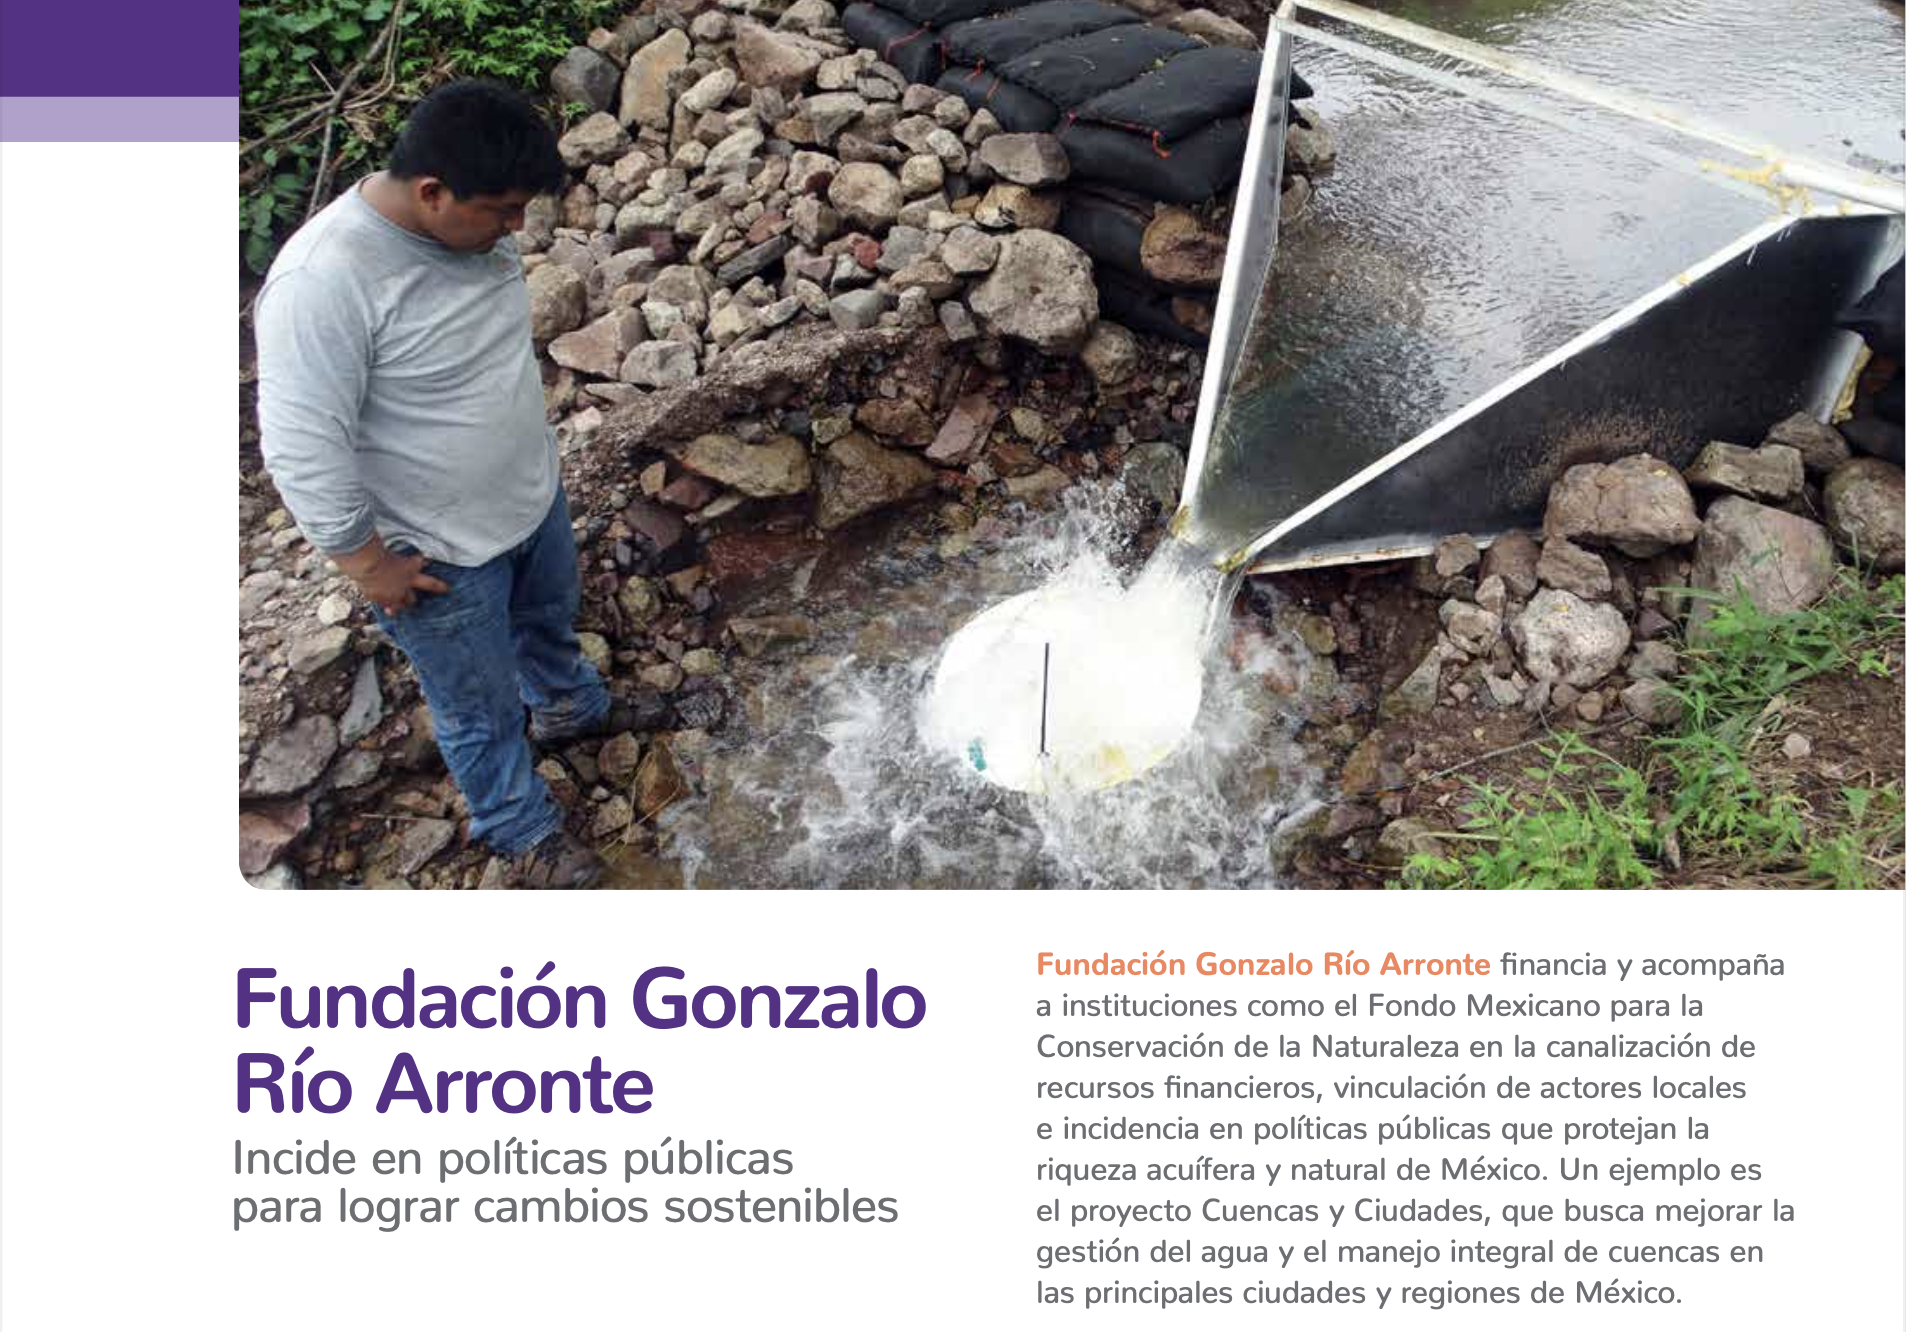 Fundación Gonzalo Río Arronte: Incide en políticas públicas para lograr cambios sostenibles (Presentación)- Fundación Gonzalo Río Arronte